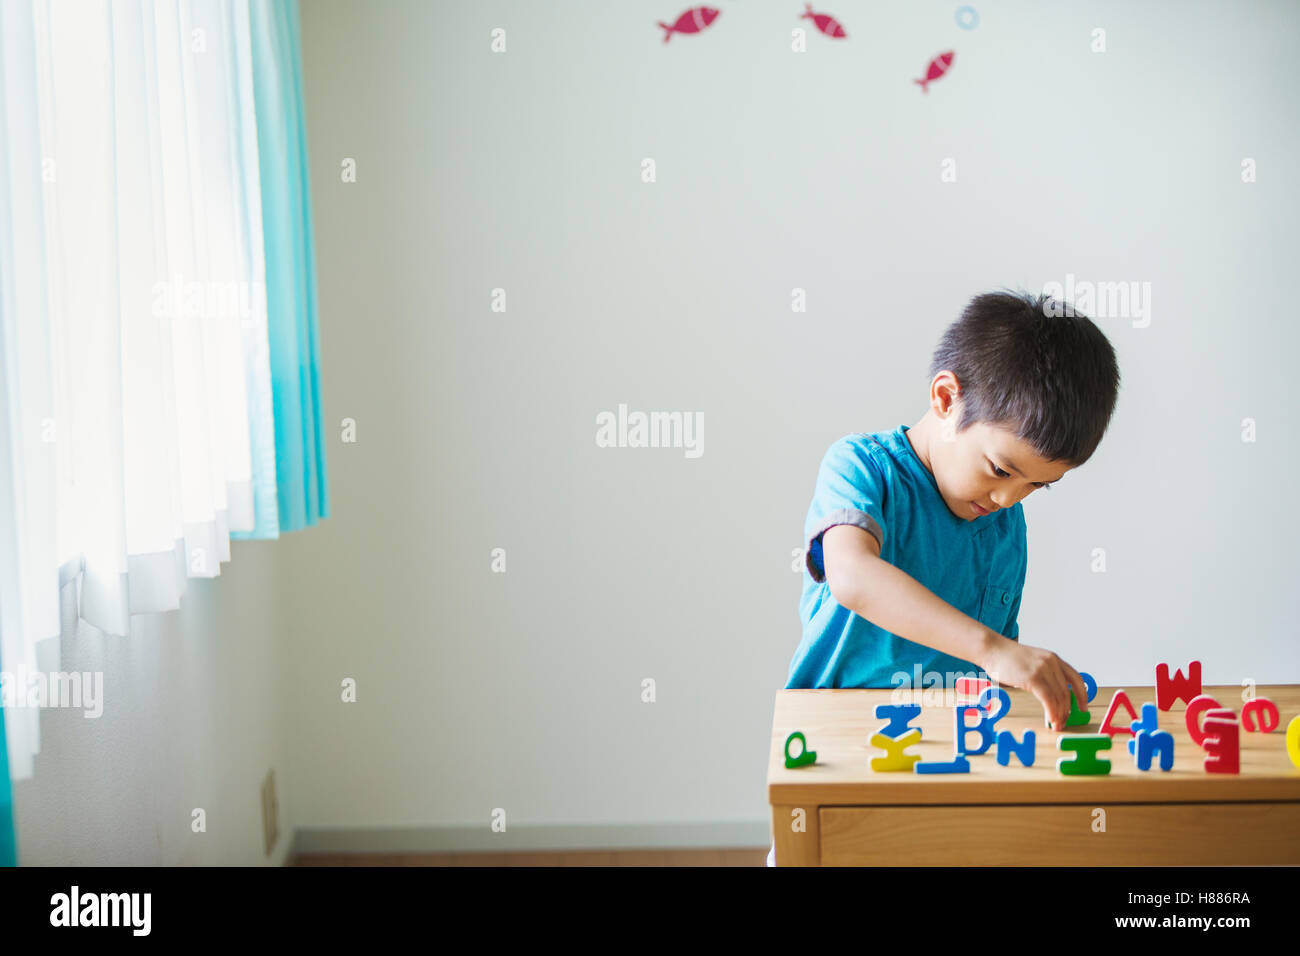 Un garçon jouant avec des lettres de l'alphabet. debout sur un tabpe, orthographe, de tri, et certains se trouvant sur le côté. Banque D'Images